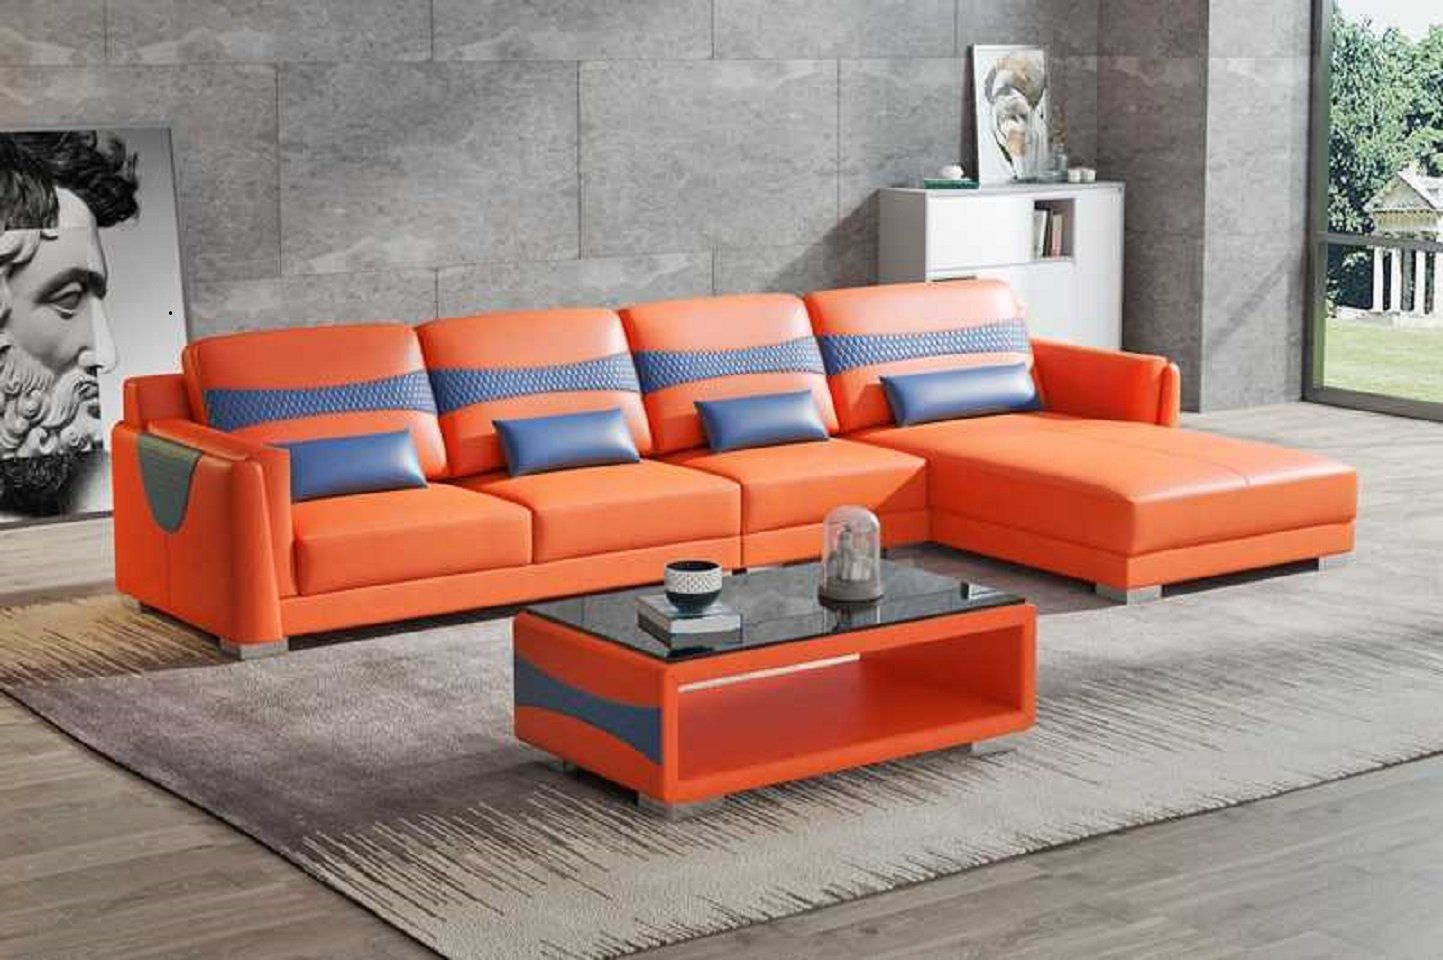 JVmoebel Ecksofa Luxus Eckgarnitur Ecksofa L Form Liege Couch Sofa Wohnzimmer Neu, 3 Teile, Made in Europe Orange/Blau